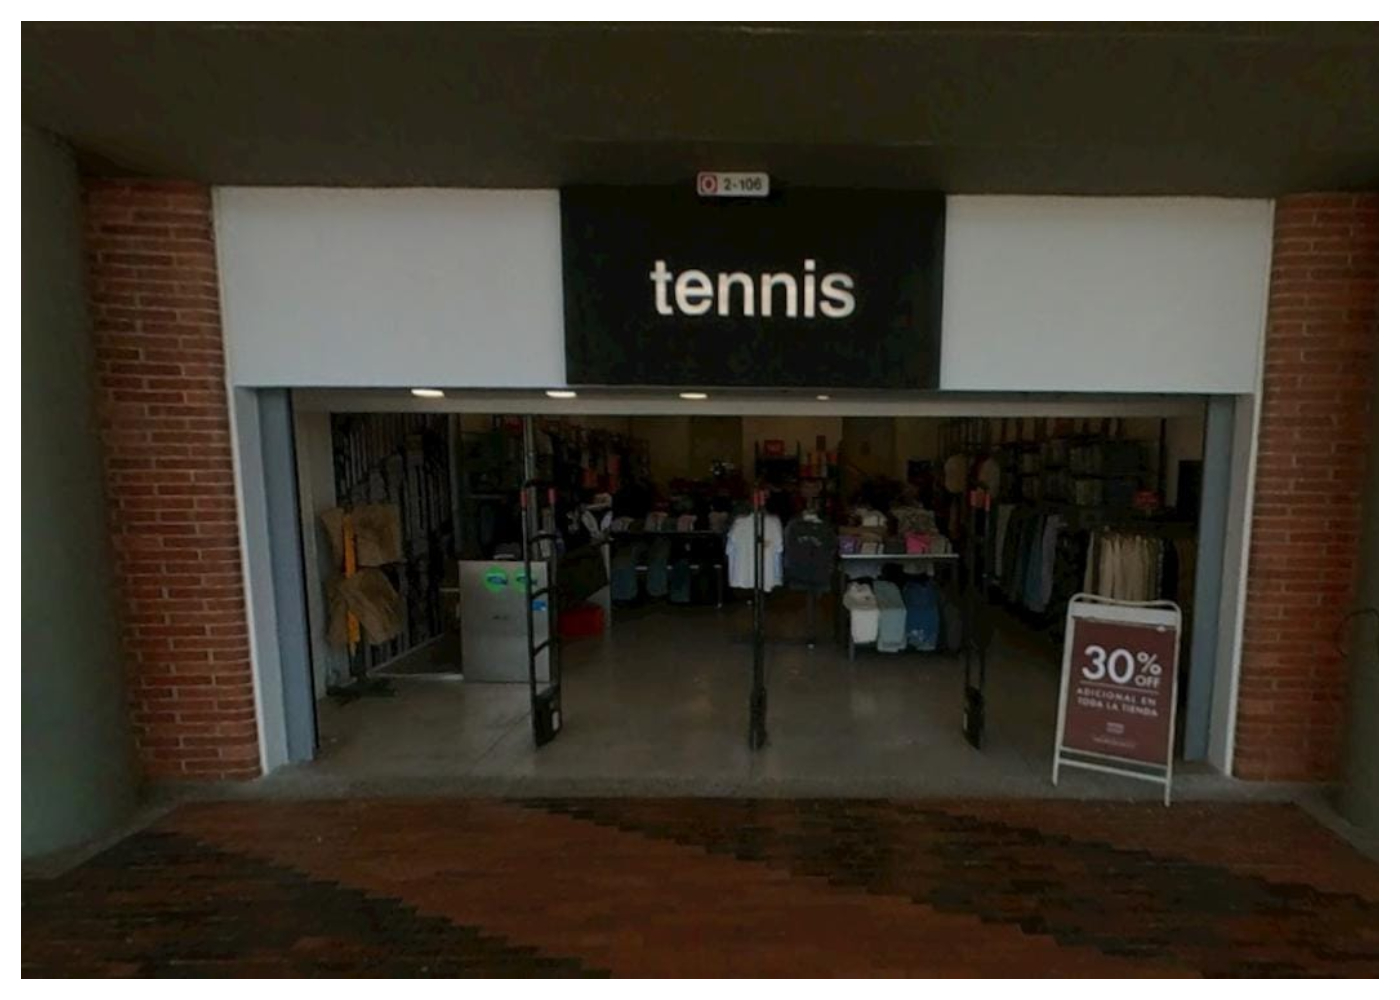 'Outlet' de Tennis en Bogotá que vende ropa desde $ 14.000: descuentos de 70%